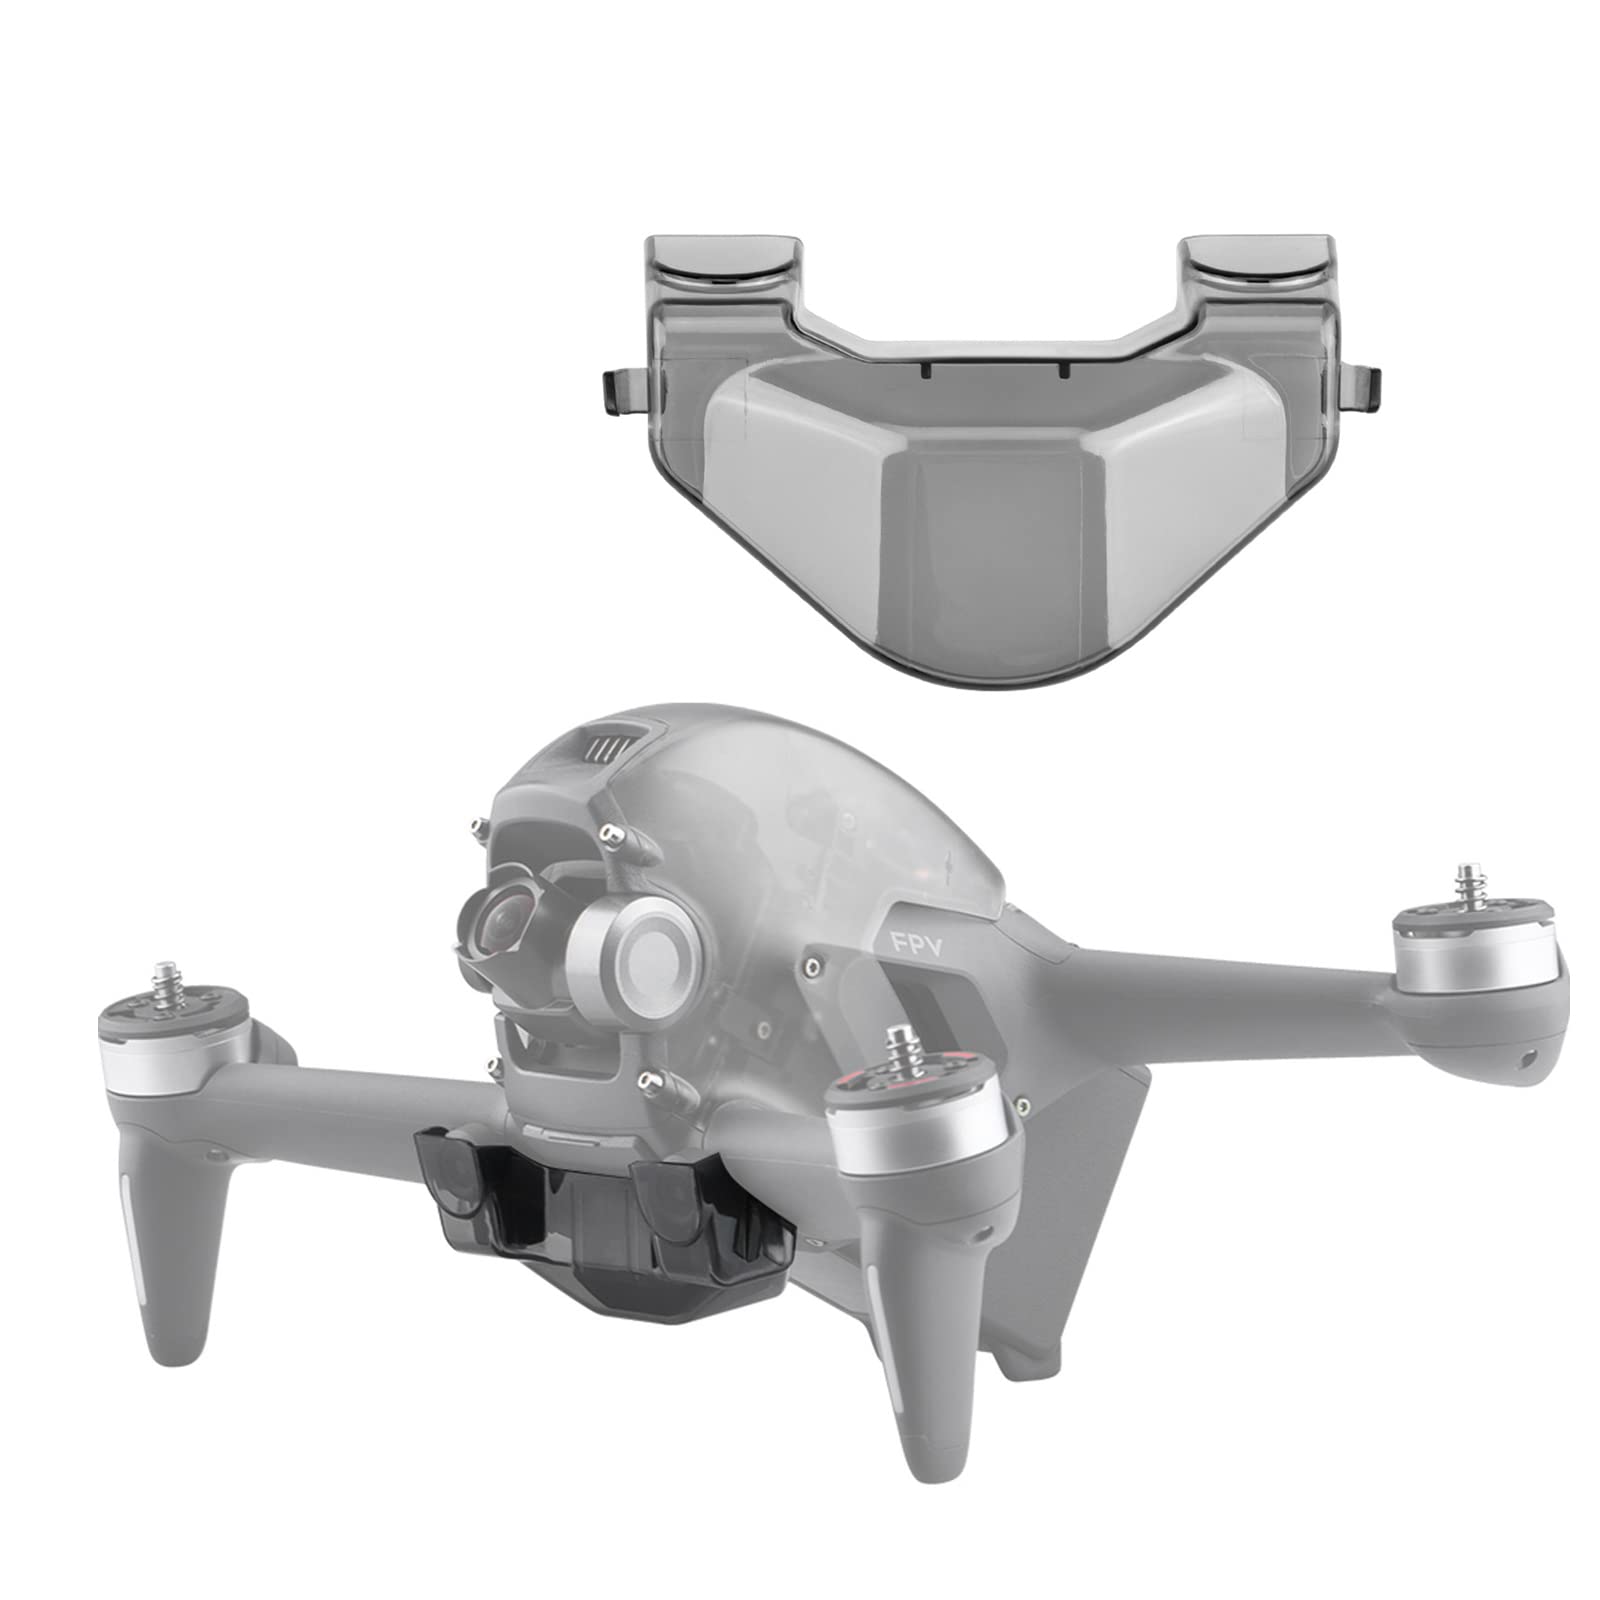 FPV Combo Drone Gimbal Schutz Zubehör, Gimbal Lens Protector Cover Staubschutzkappe für DJI FPV Combo Drone, Schutzabdeckung für Down View-Objektiv von ZJRXM Zubehör für DJI Drone